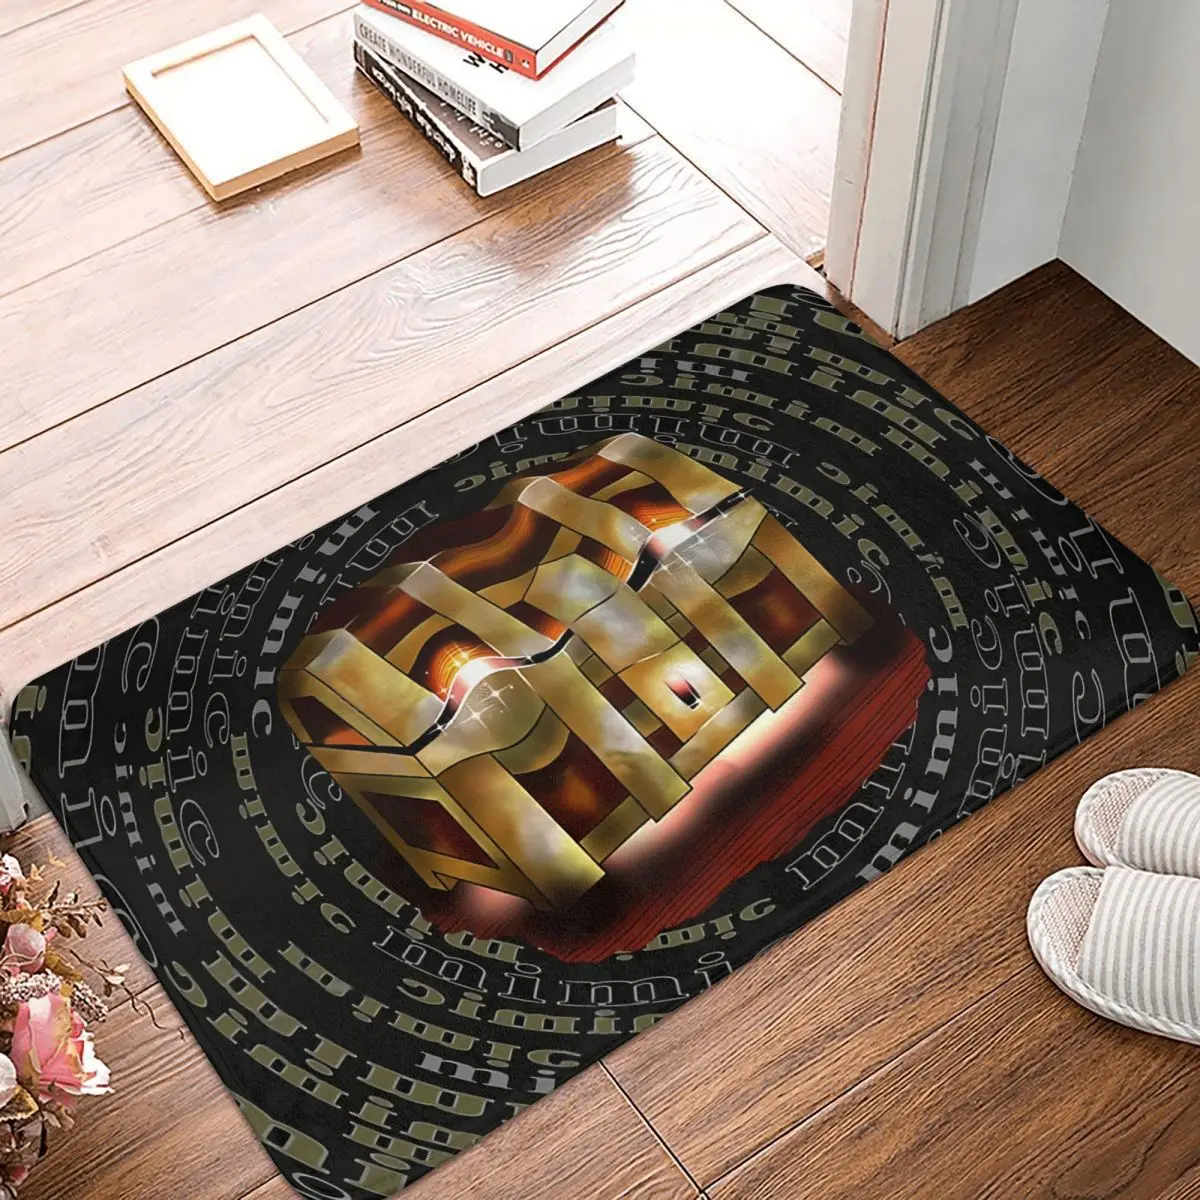 

Игра DnD коврик для спальни золотой имитирующий грудь с сокровищами, Придверный коврик, кухонный ковер, уличный коврик, украшение для дома